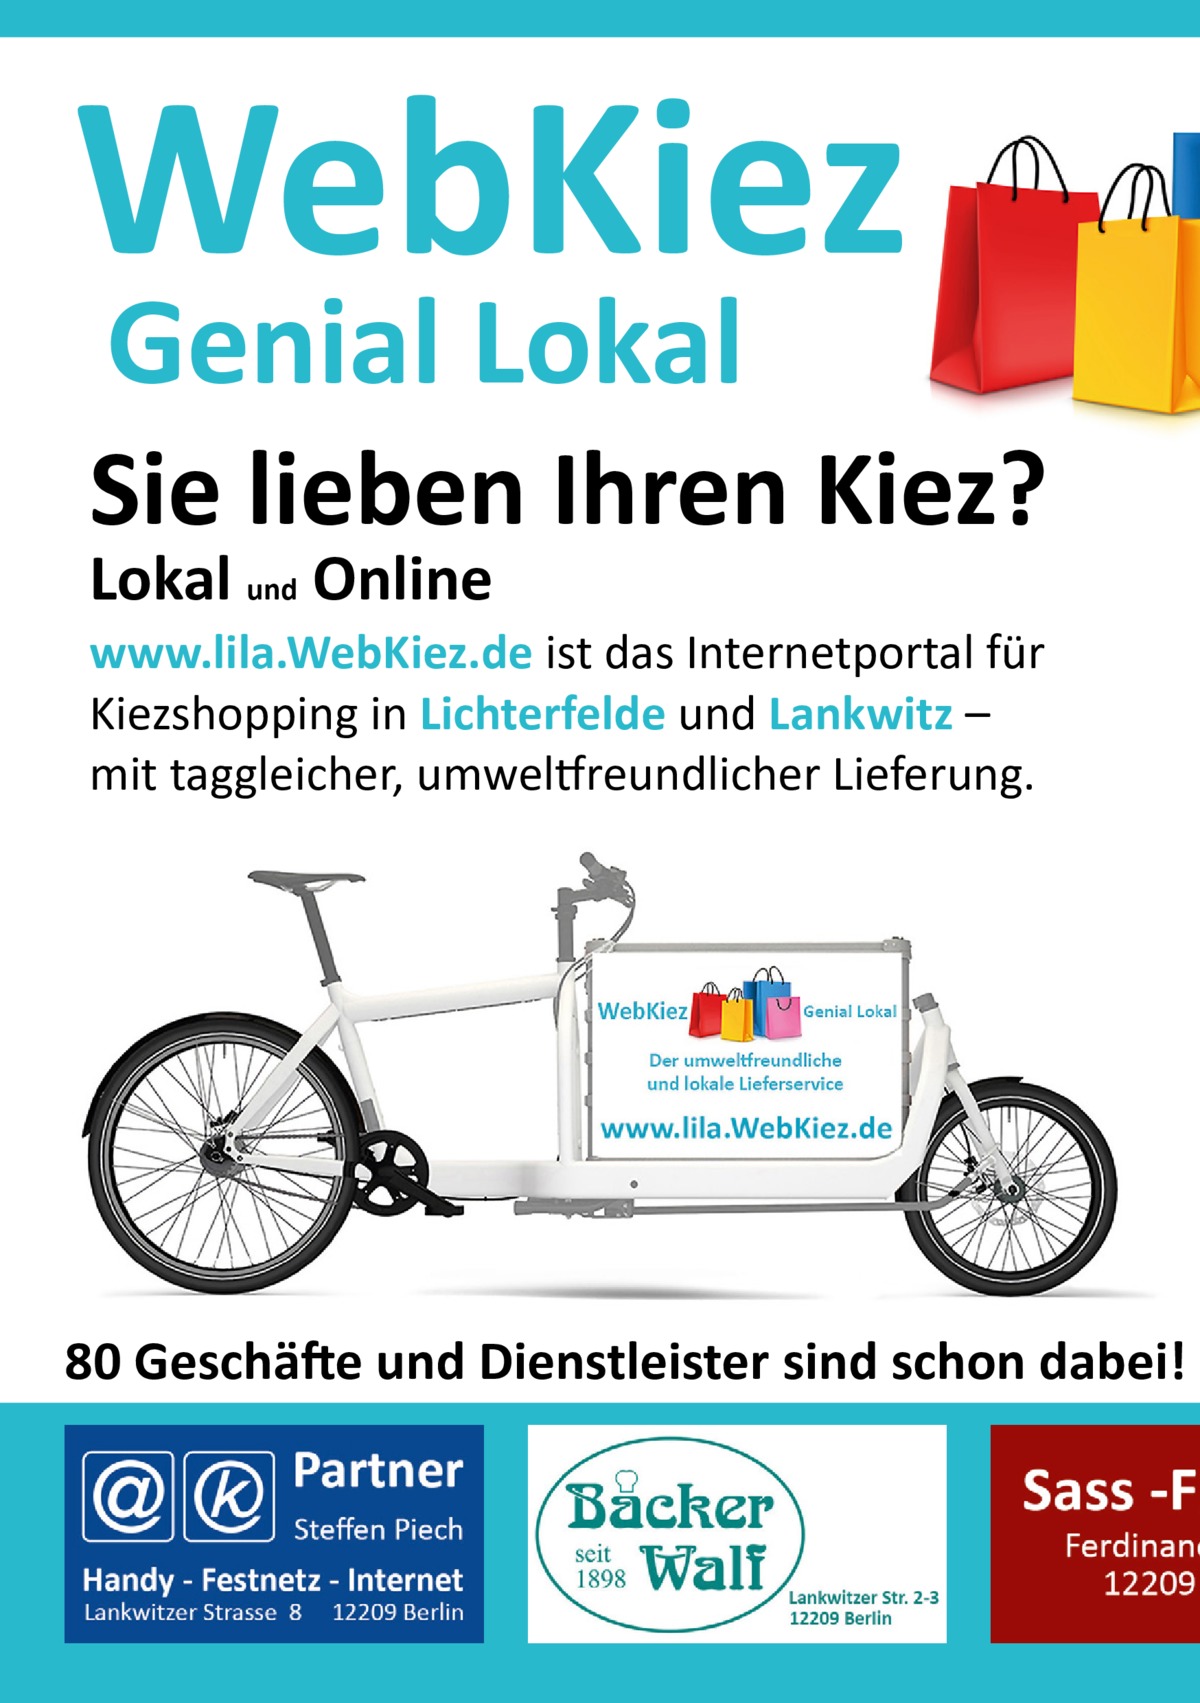 WebKiez Genial Lokal  Sie lieben Ihren Kiez? Lokal und Online  www.lila.WebKiez.de ist das Internetportal für Kiezshopping in Lichterfelde und Lankwitz – mit taggleicher, umweltfreundlicher Lieferung.  80 Geschäfte und Dienstleister sind schon dabei!